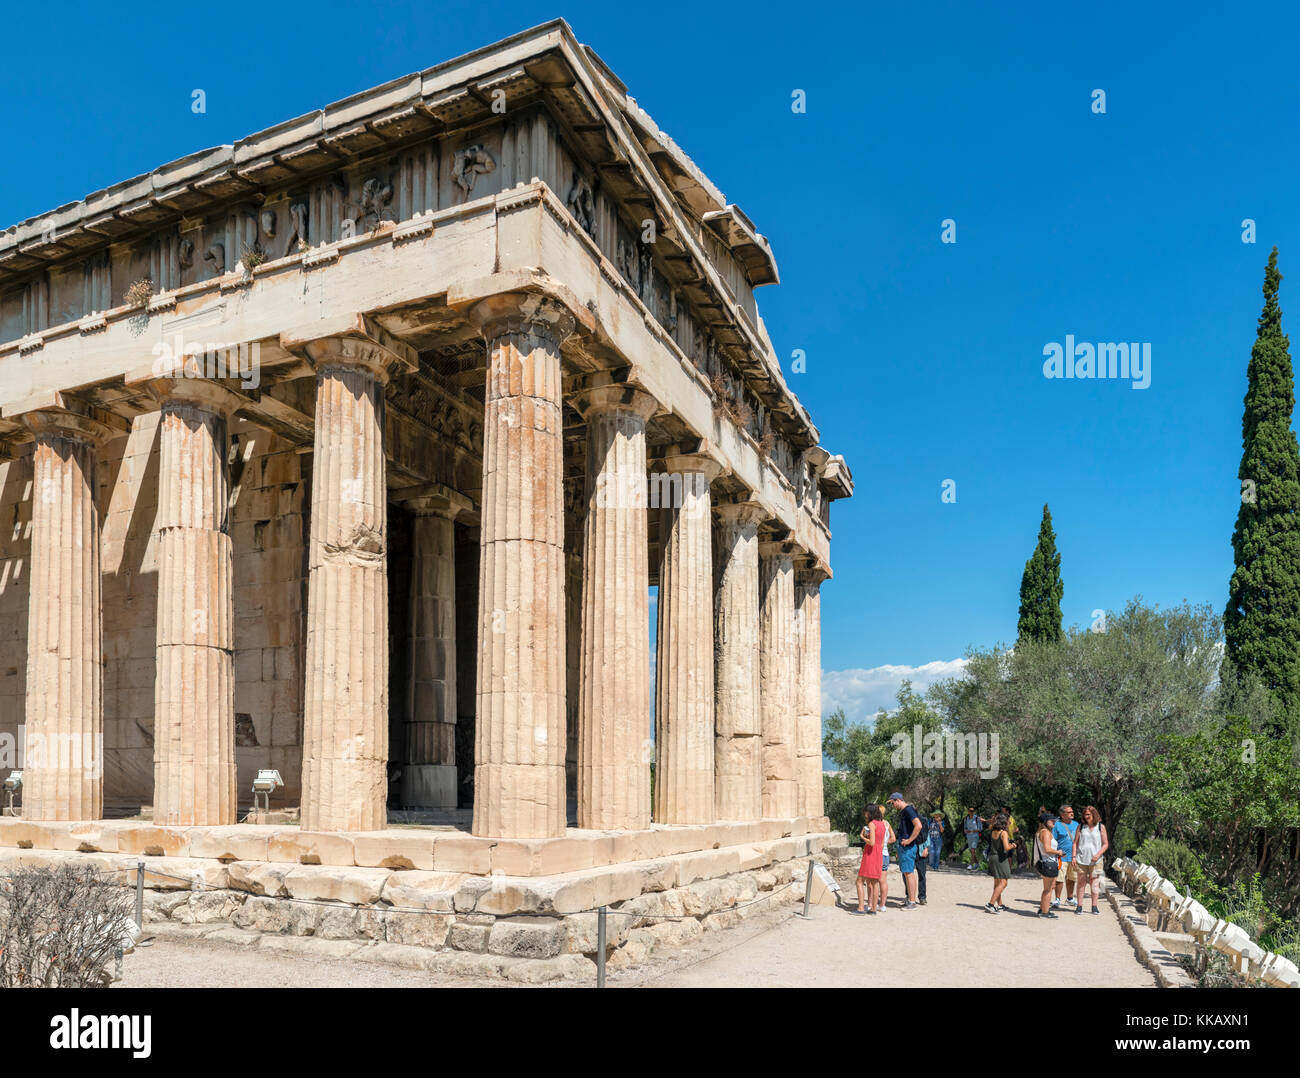 I turisti di fronte al Tempio di Efesto (Hephaistos) nel distretto dell'Antica Agorà di Atene, Grecia Foto Stock